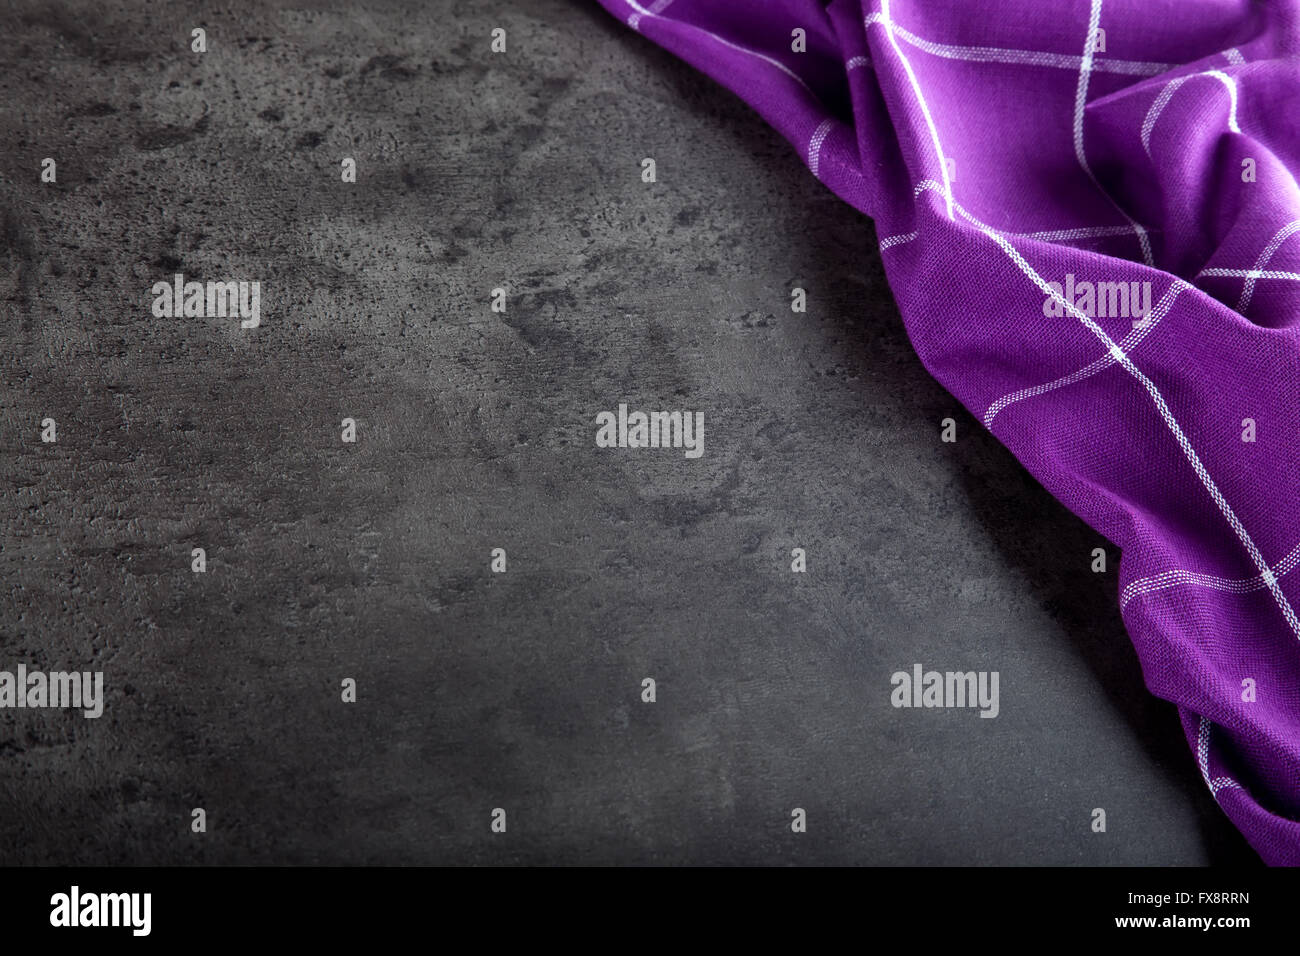 Vue de dessus de cuisine nappe à carreaux violet sur du béton - pierre - marbre - fond de bois. Espace libre pour votre texte ou pr Banque D'Images